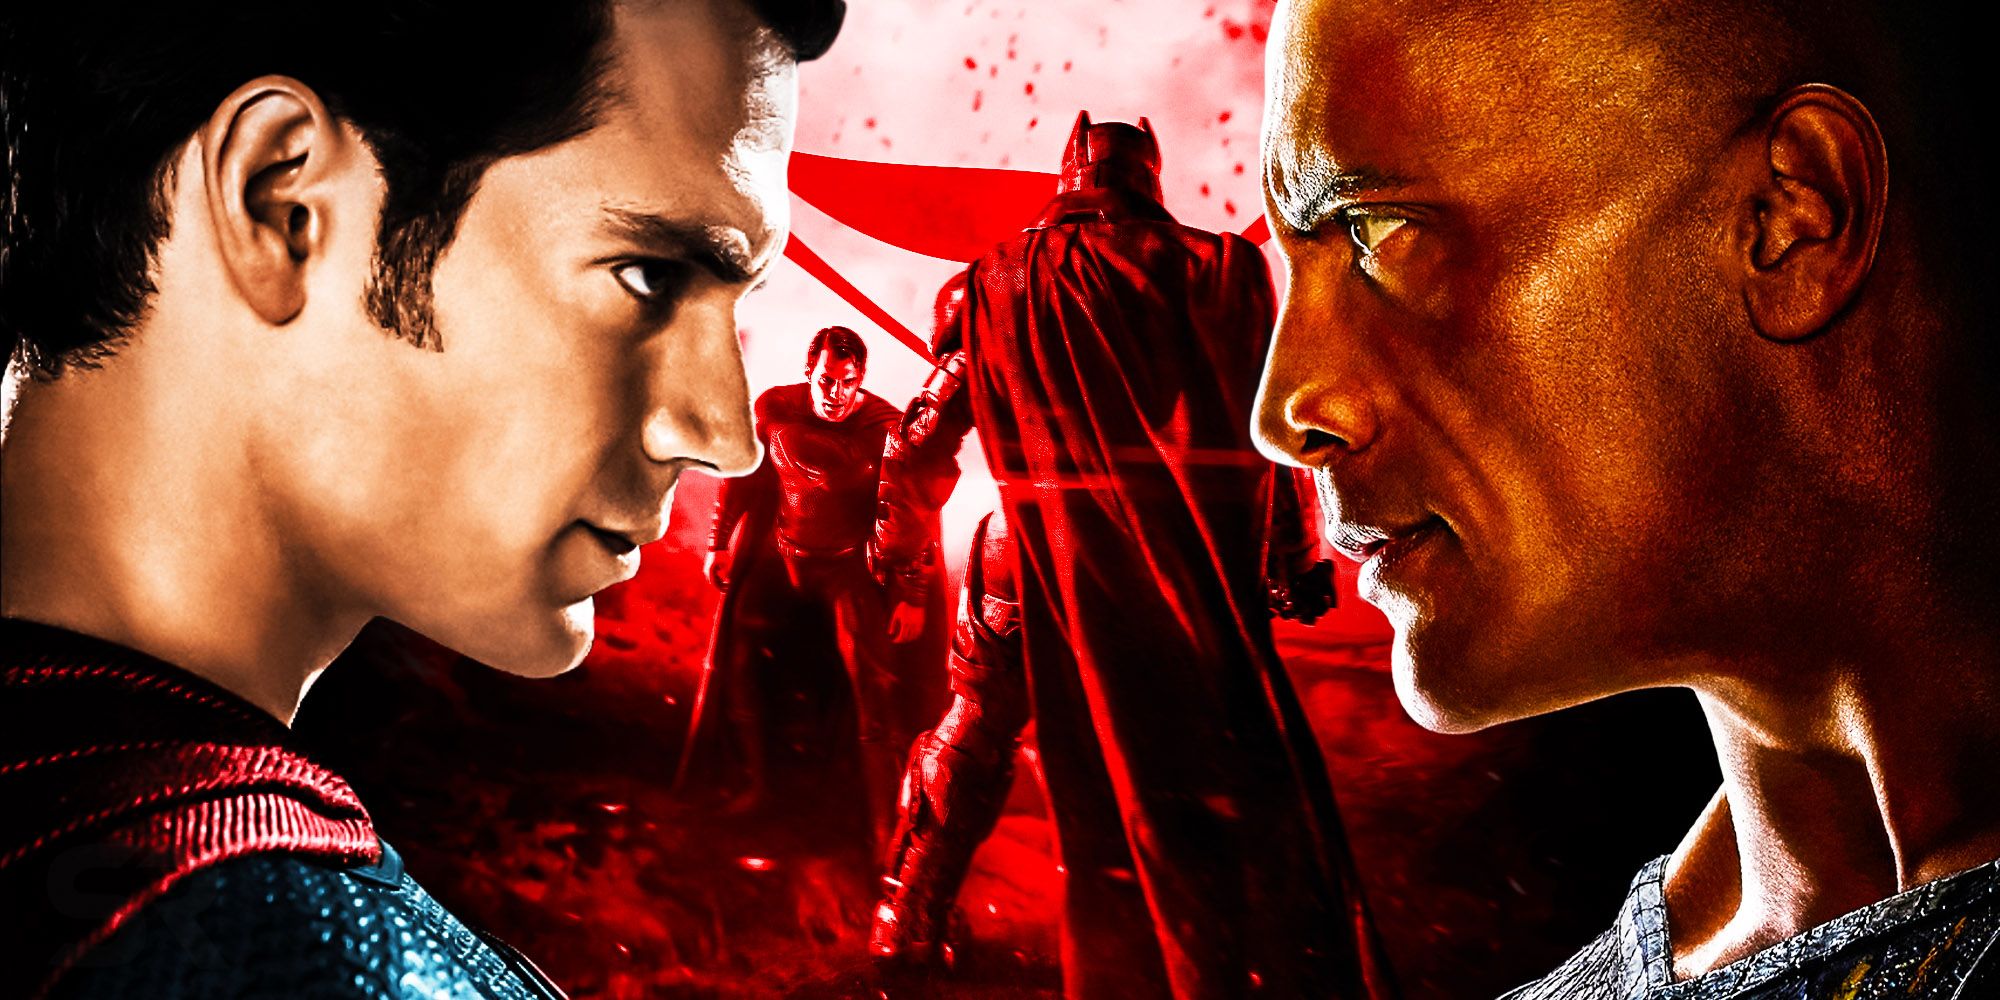 Black Adam 2 - Official Trailer Black Adam vs Superman and Shazam [2024]  Concept Trailer